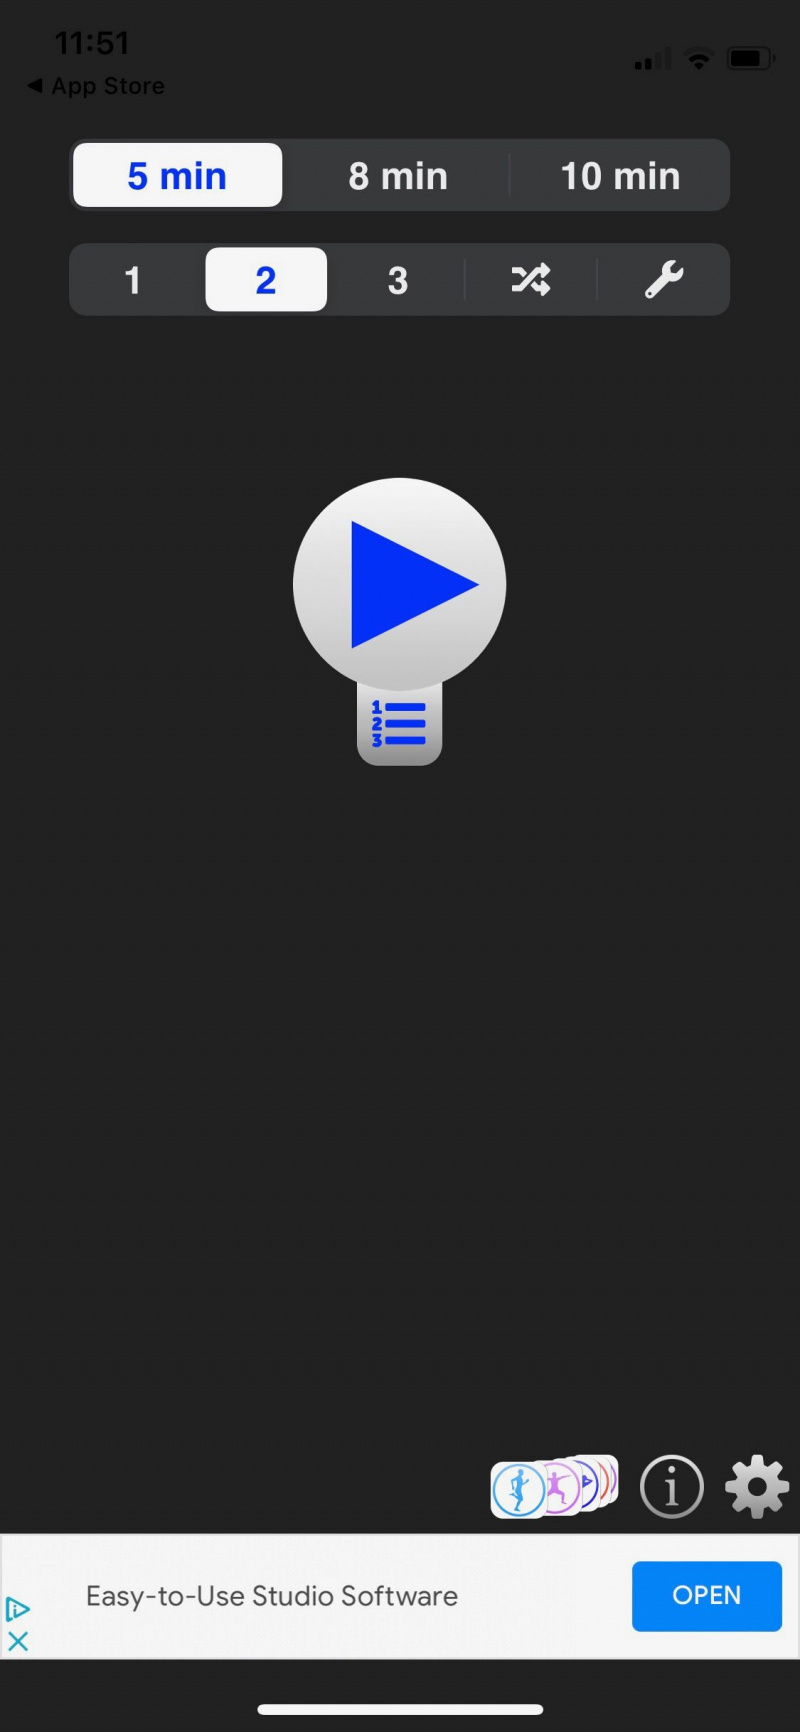   Snímka obrazovky denného brucha zobrazujúca domovskú obrazovku aplikácie